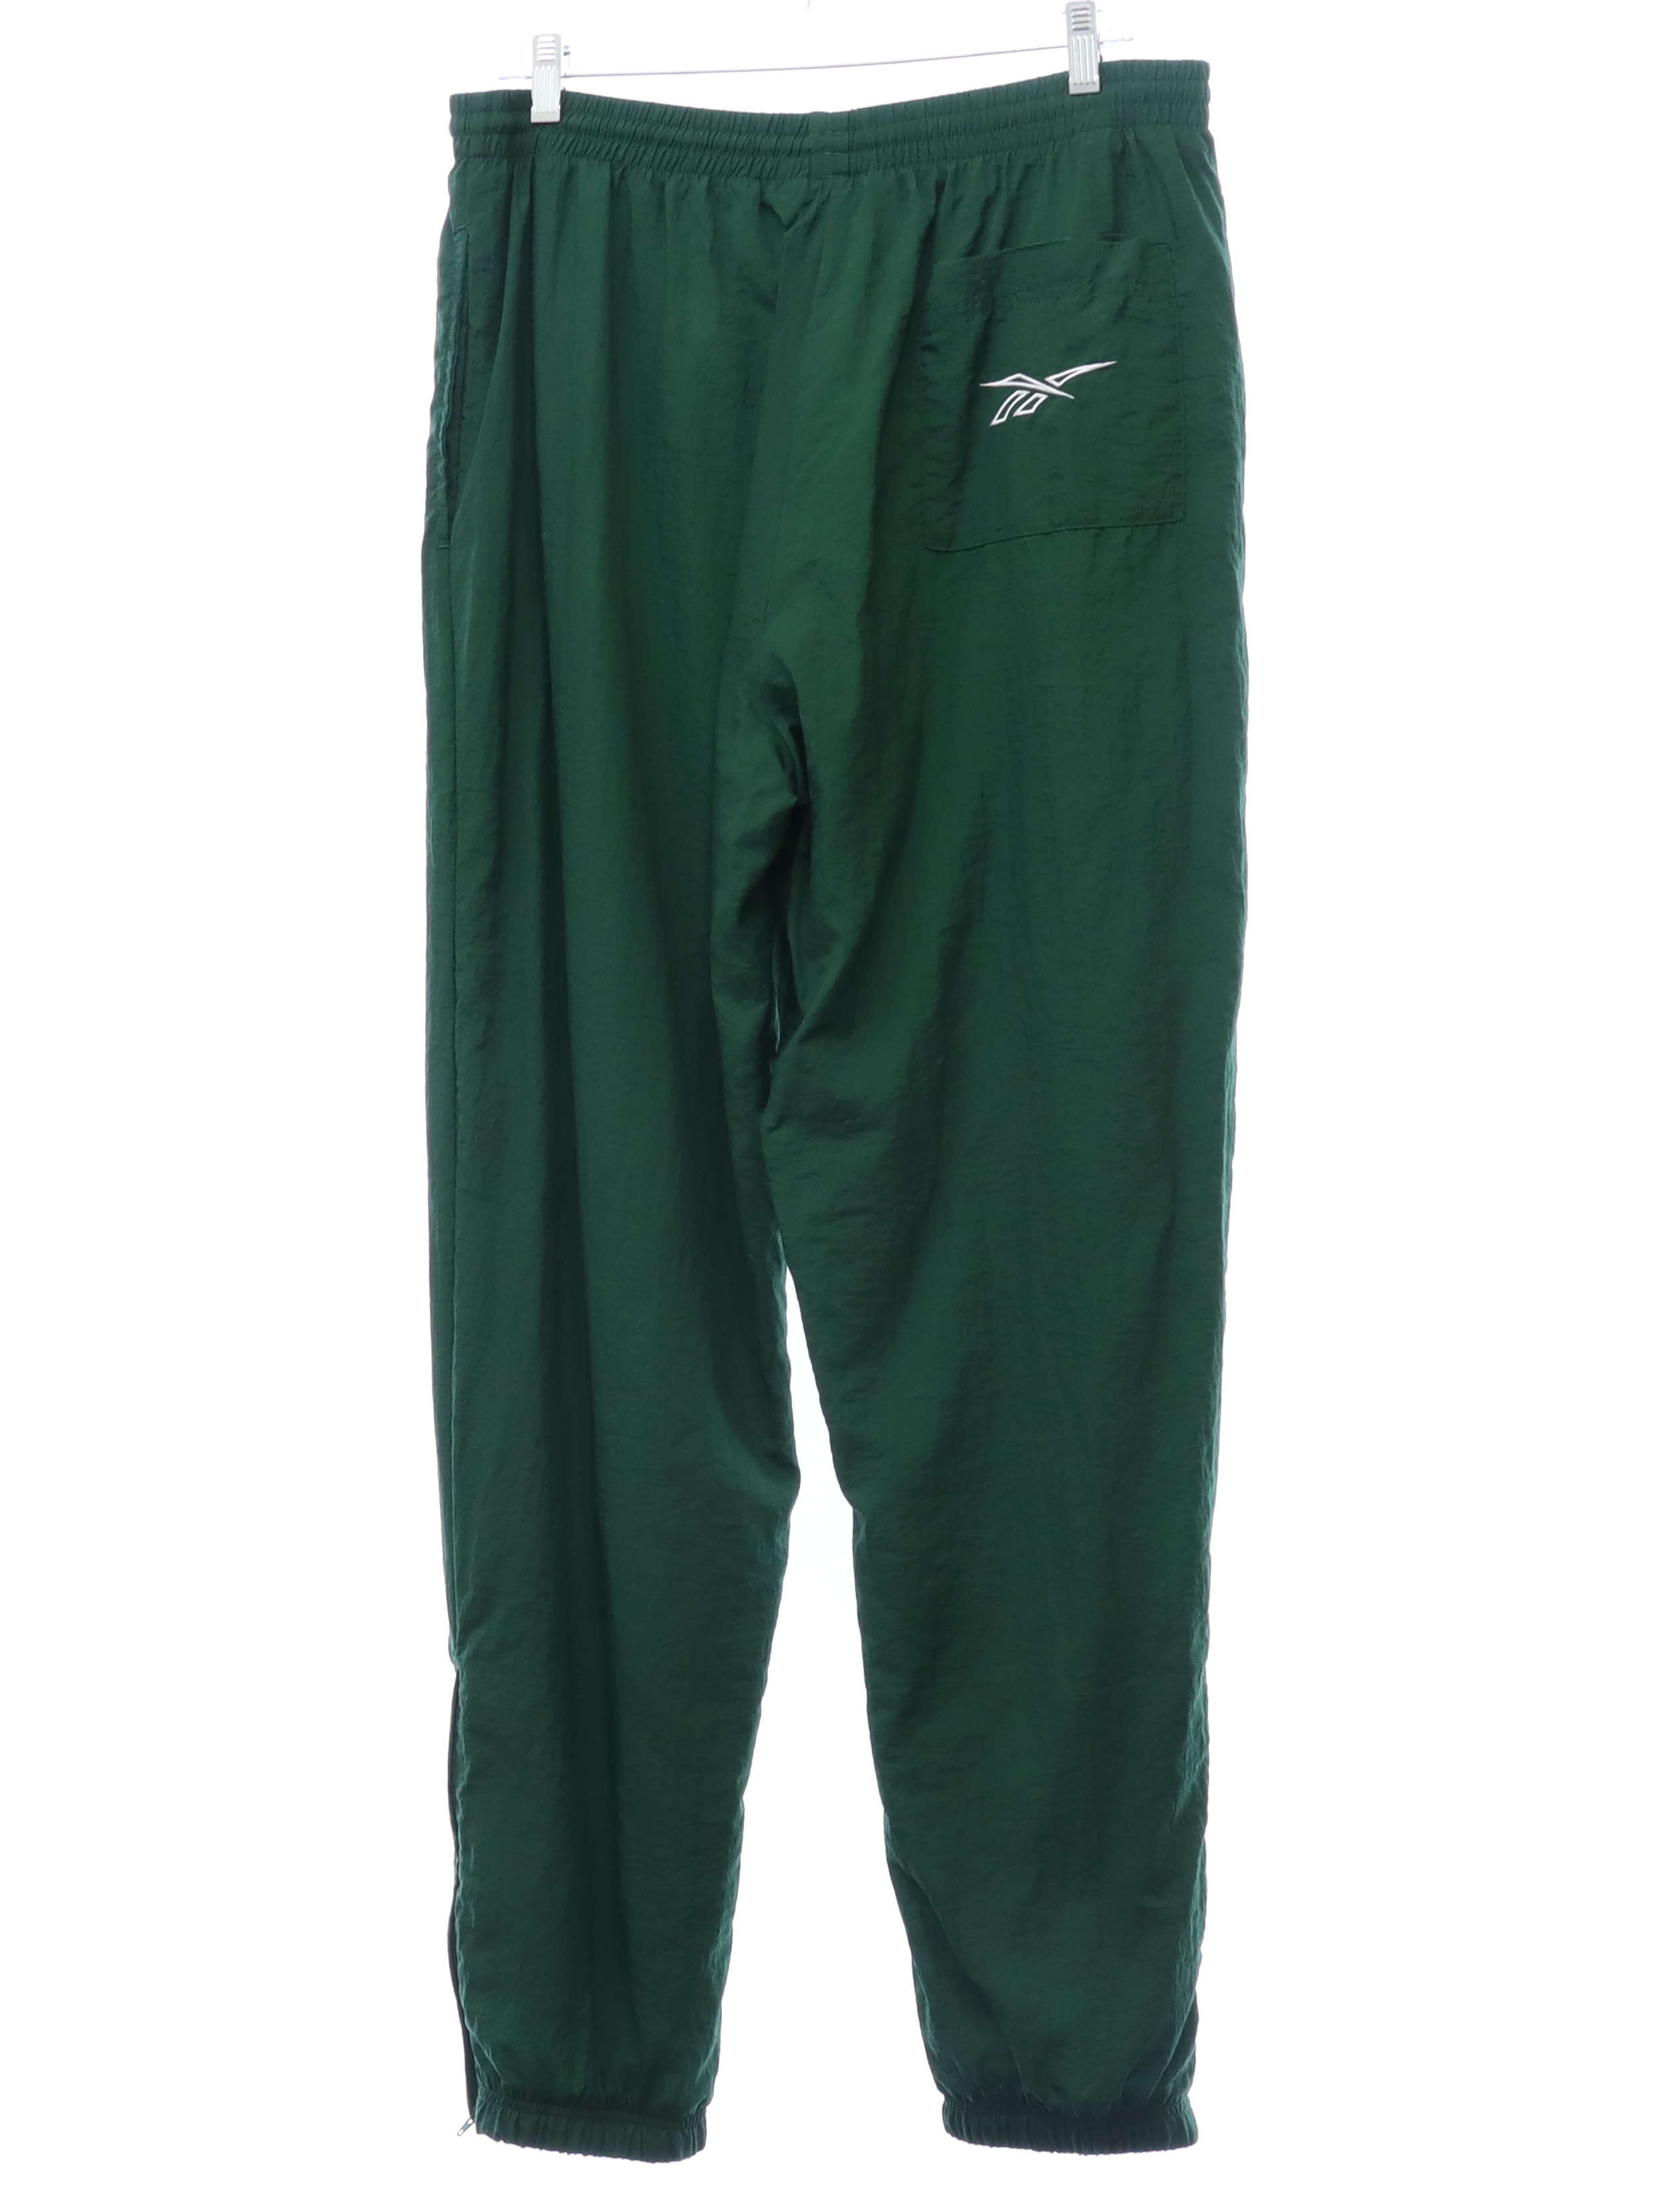 Pants: 90s -Reebok- Mens dark green solid colored crinkle nylon